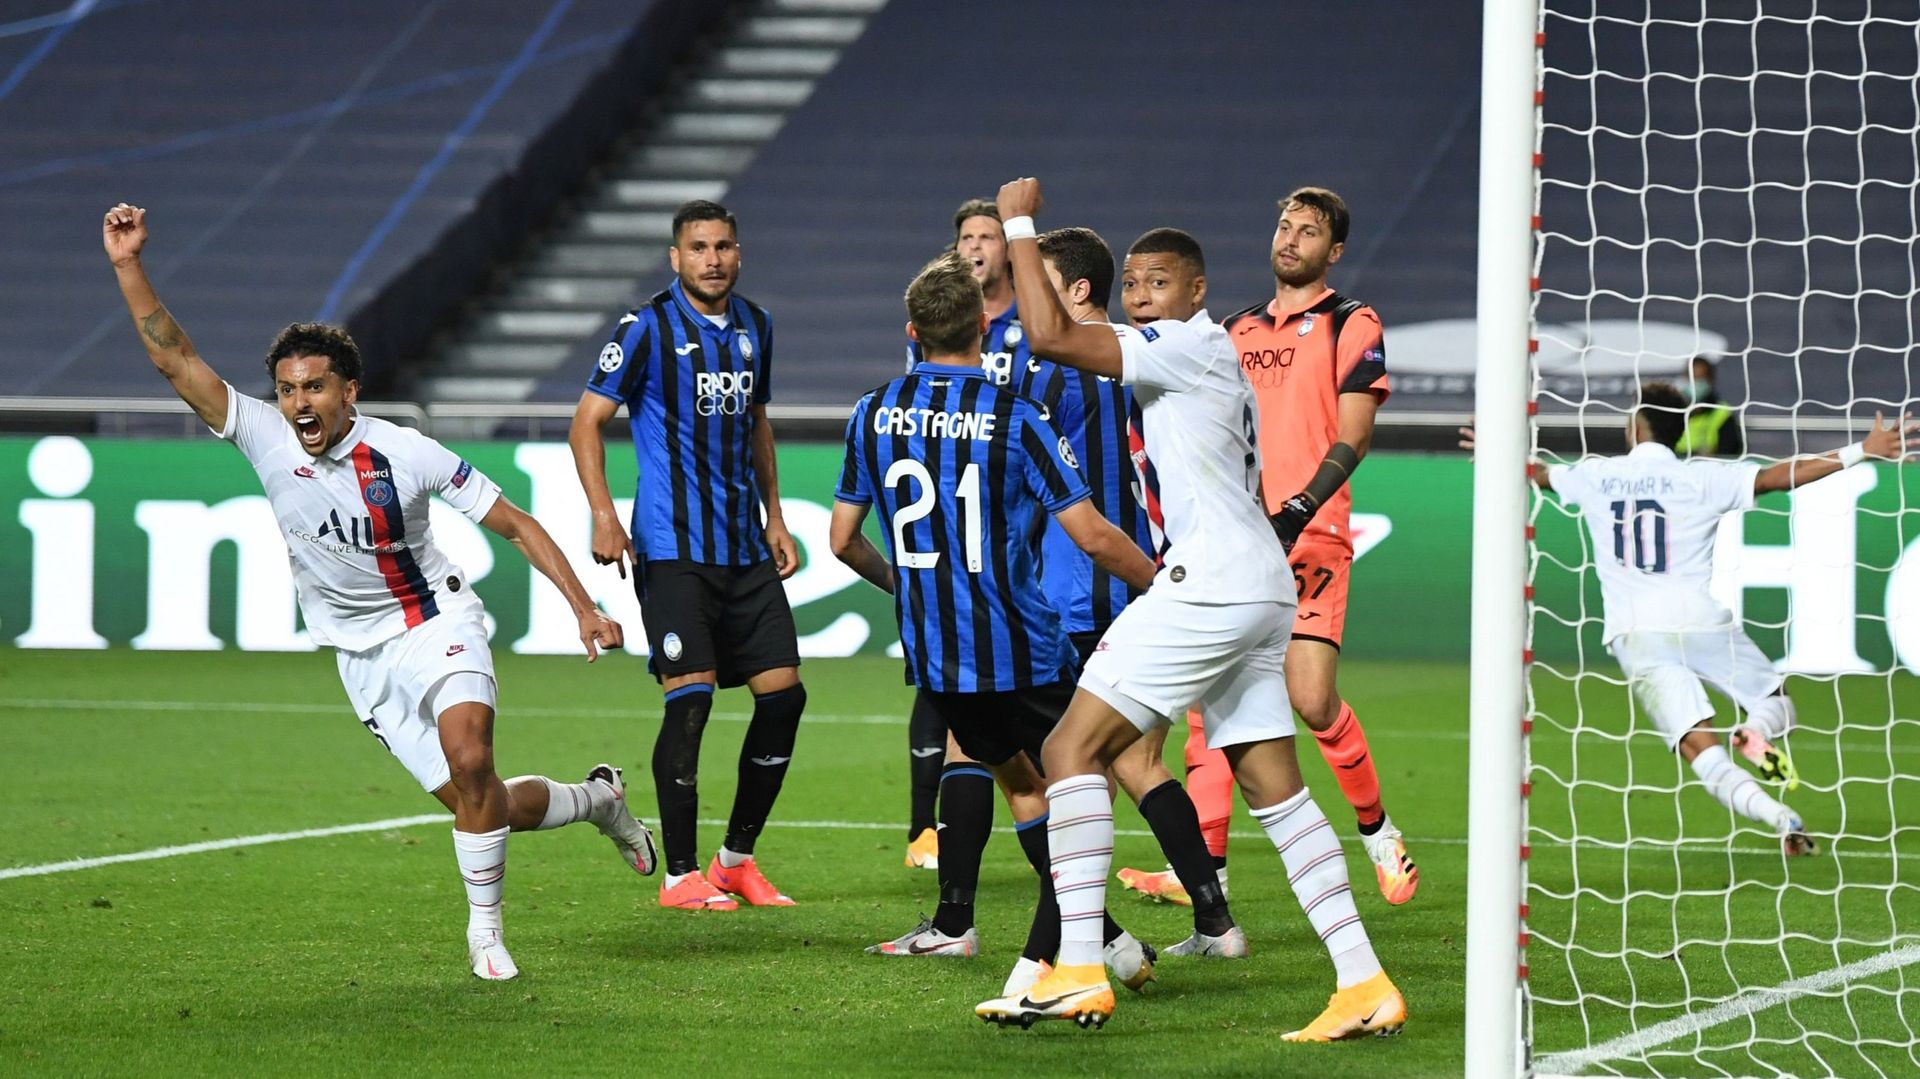 Le PSG qualifié pour les demi-finales après une 'remontada' folle contre l'Atalanta